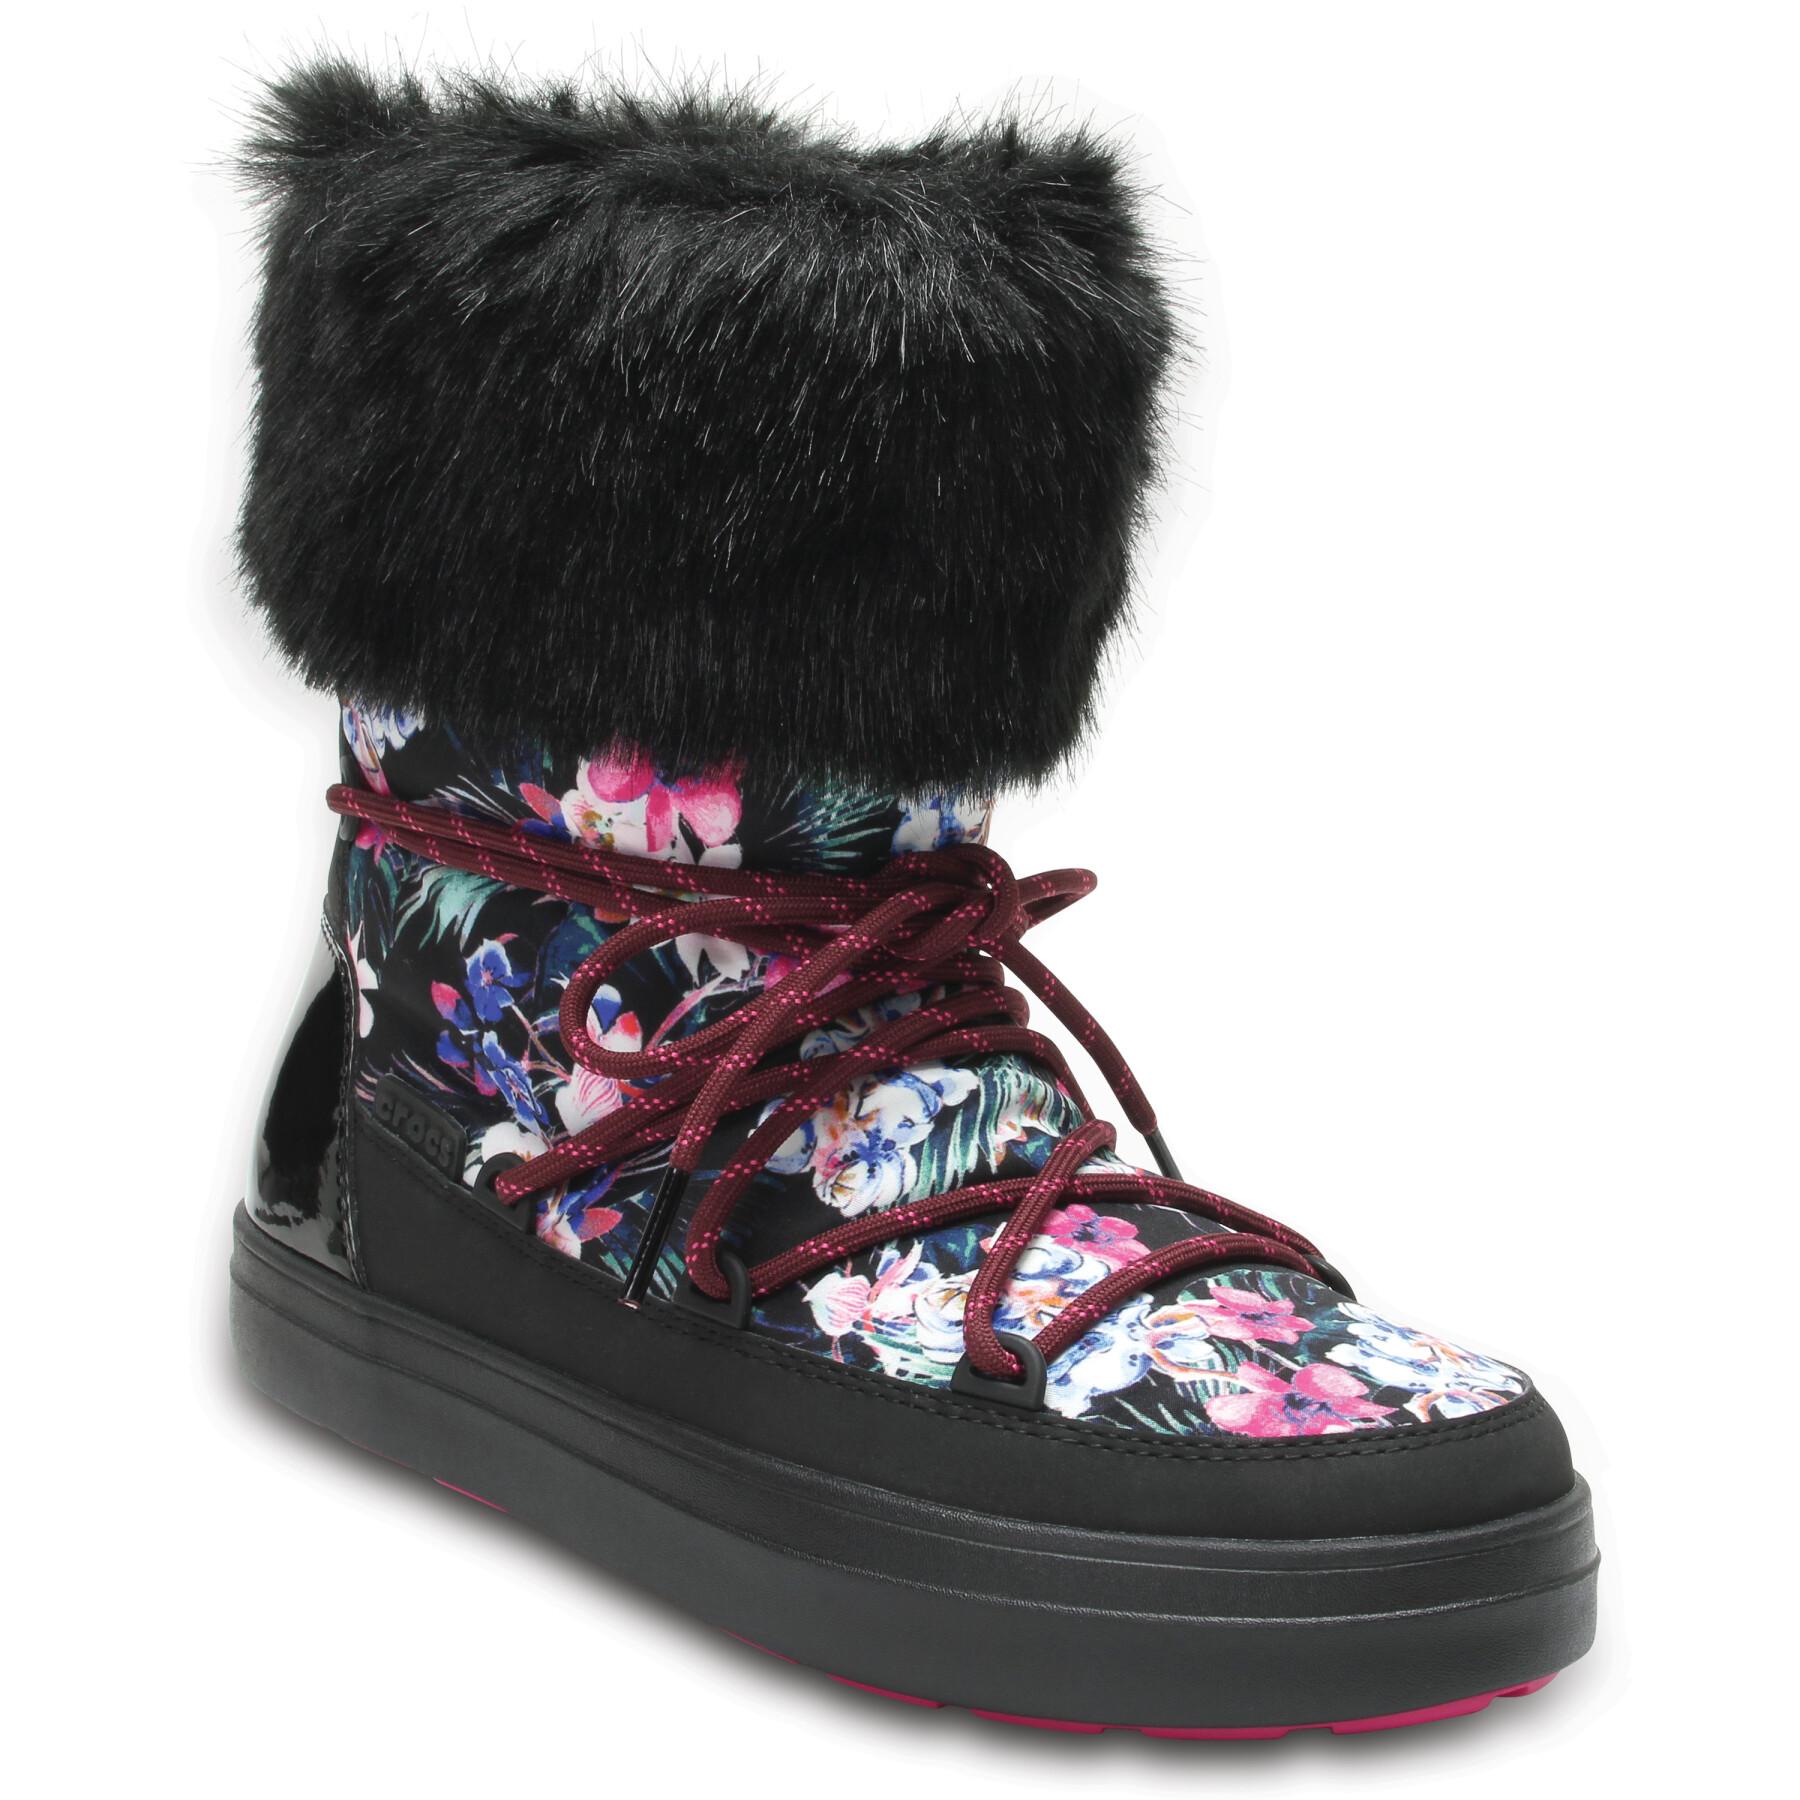 Buty śniegowe damskie Crocs lodgepoint graphic lace